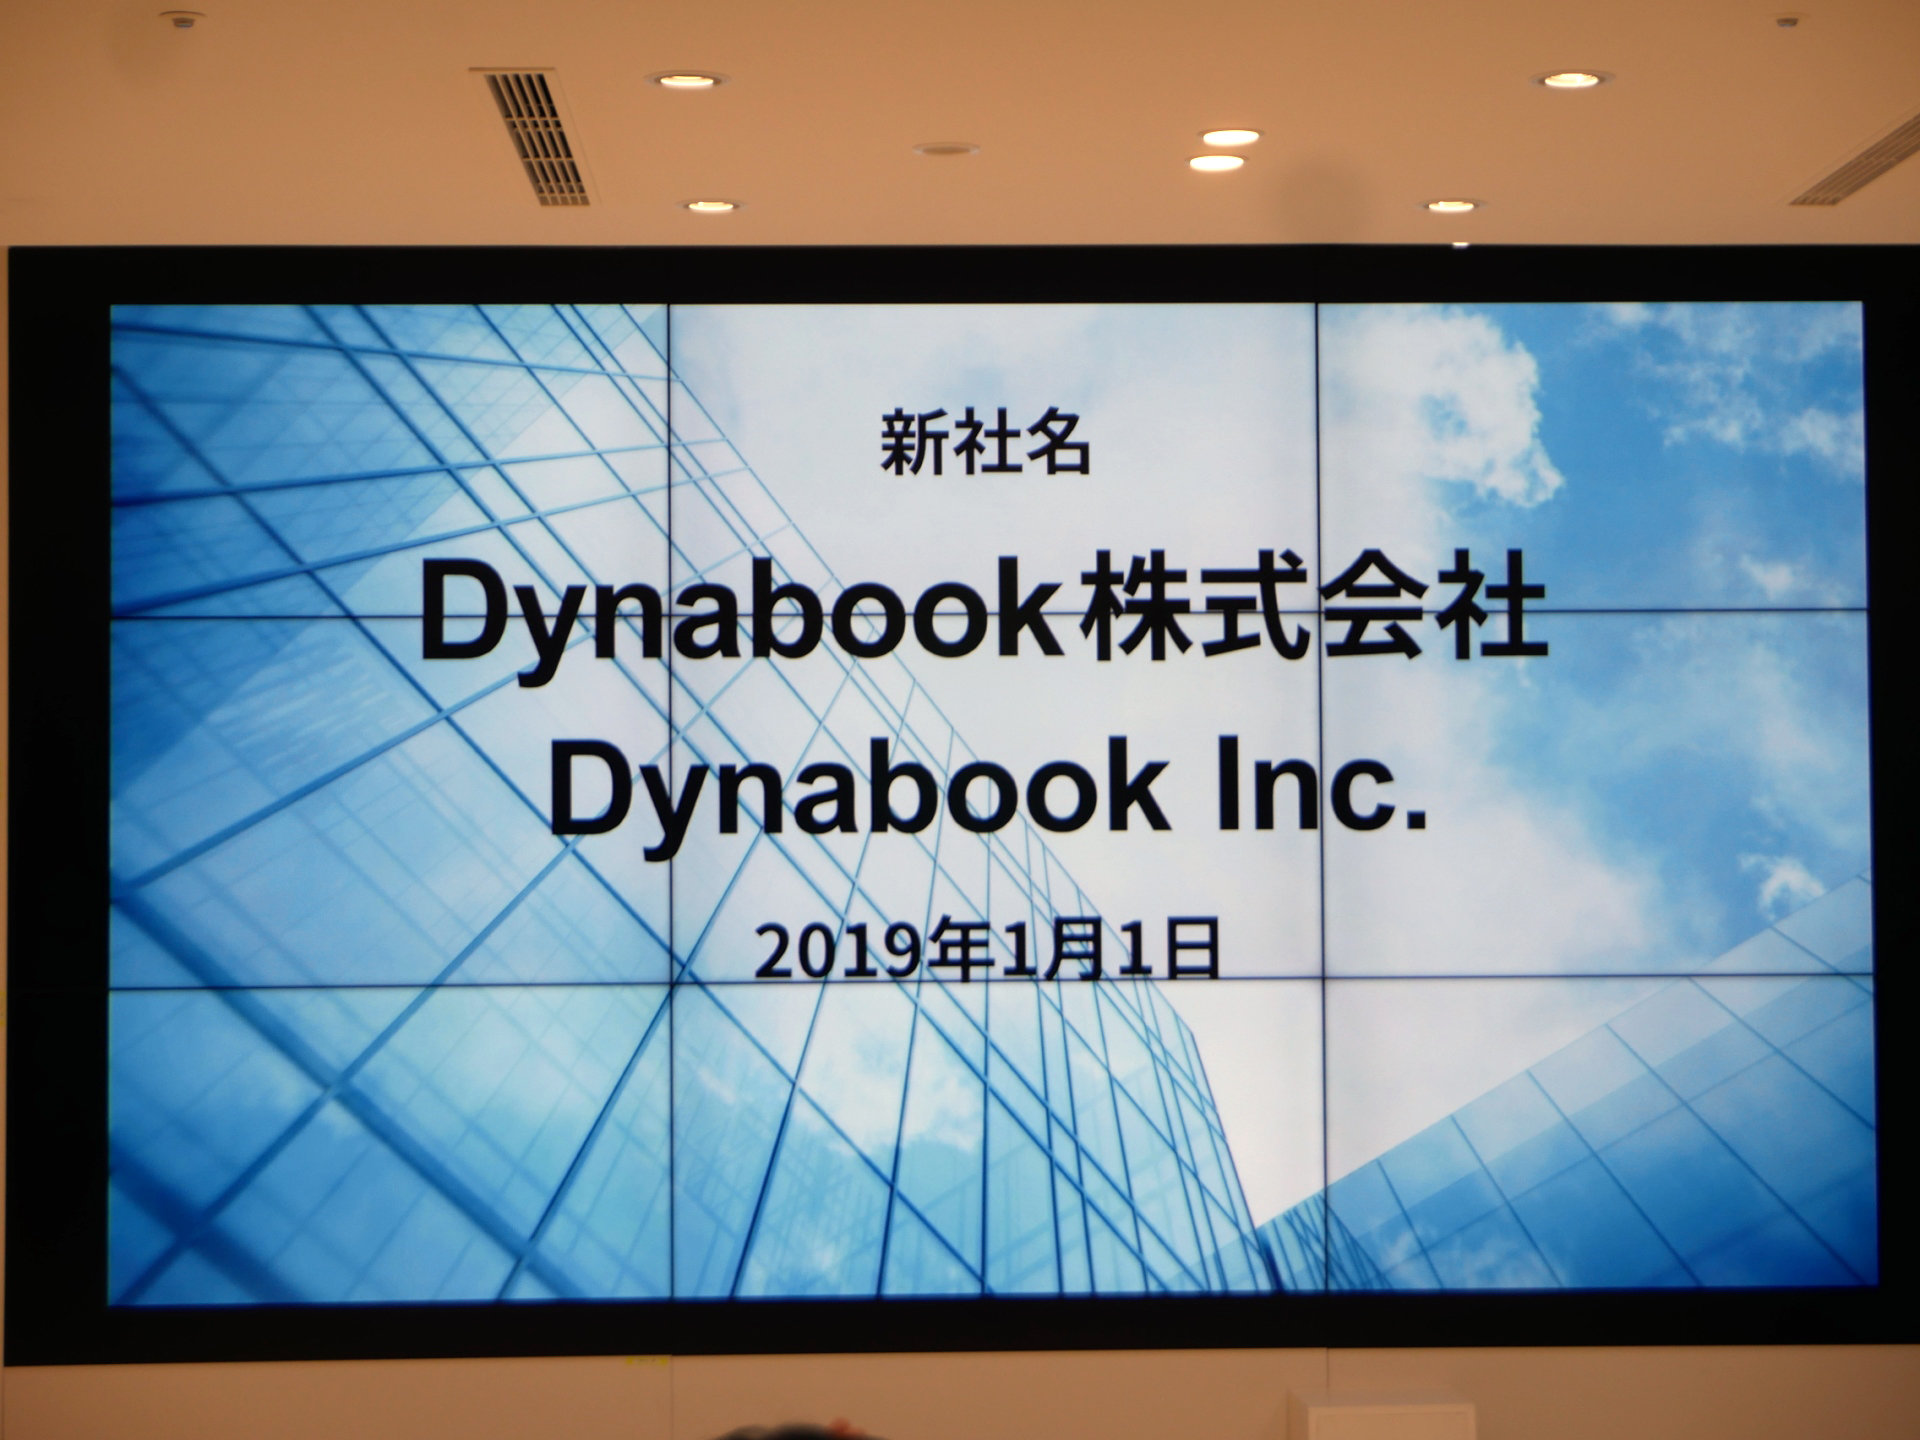 東芝クライアントソリューションが「Dynabook株式会社」に社名変更 ...